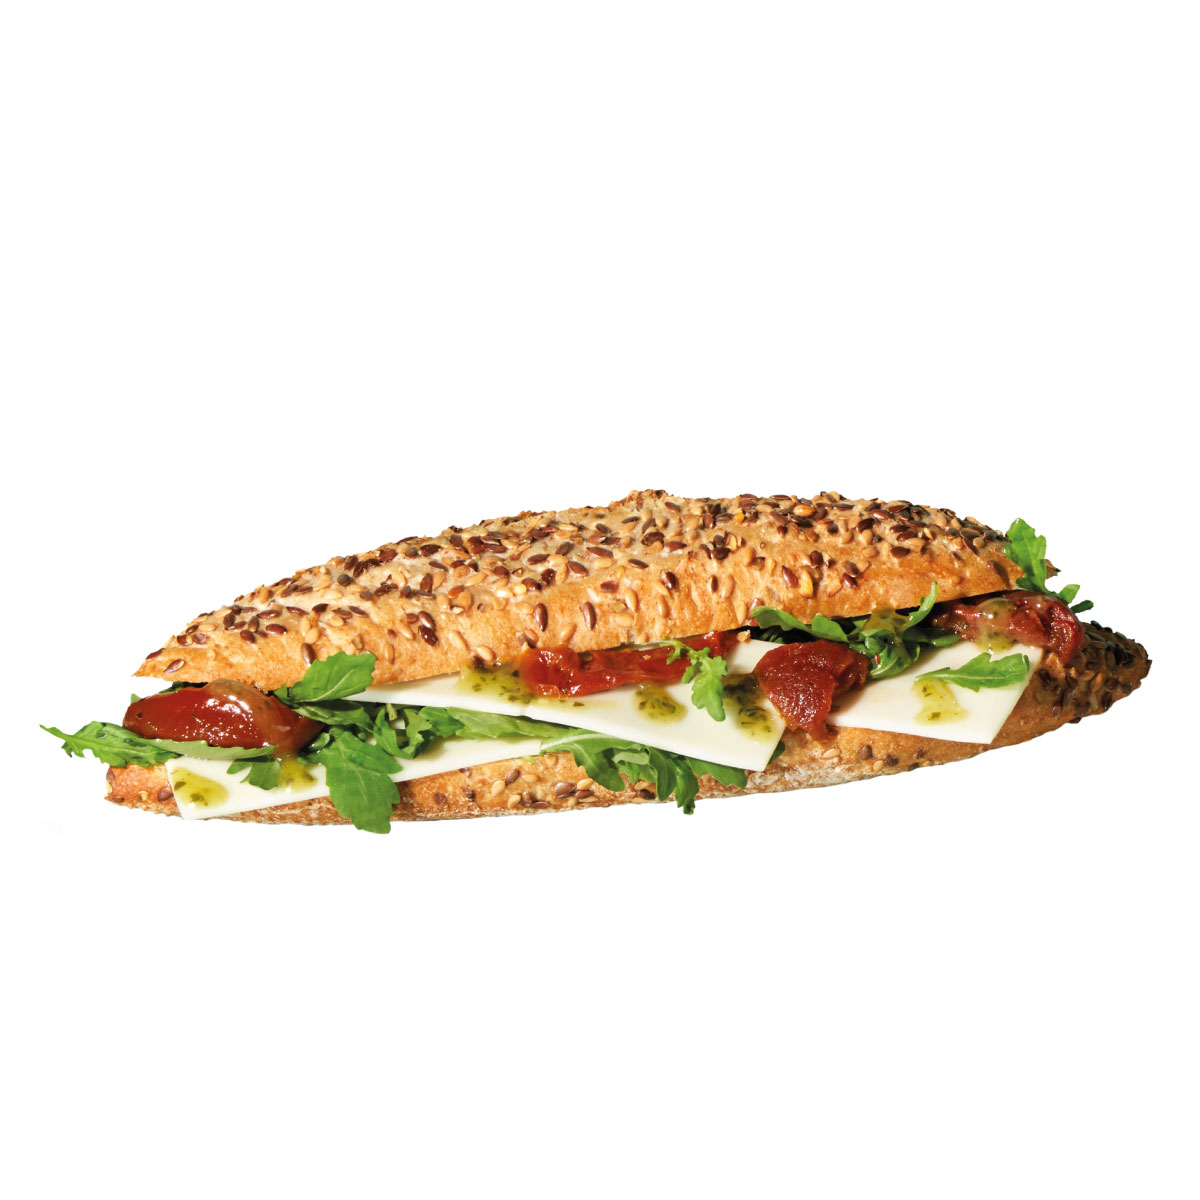 Italian deluxe sandwich